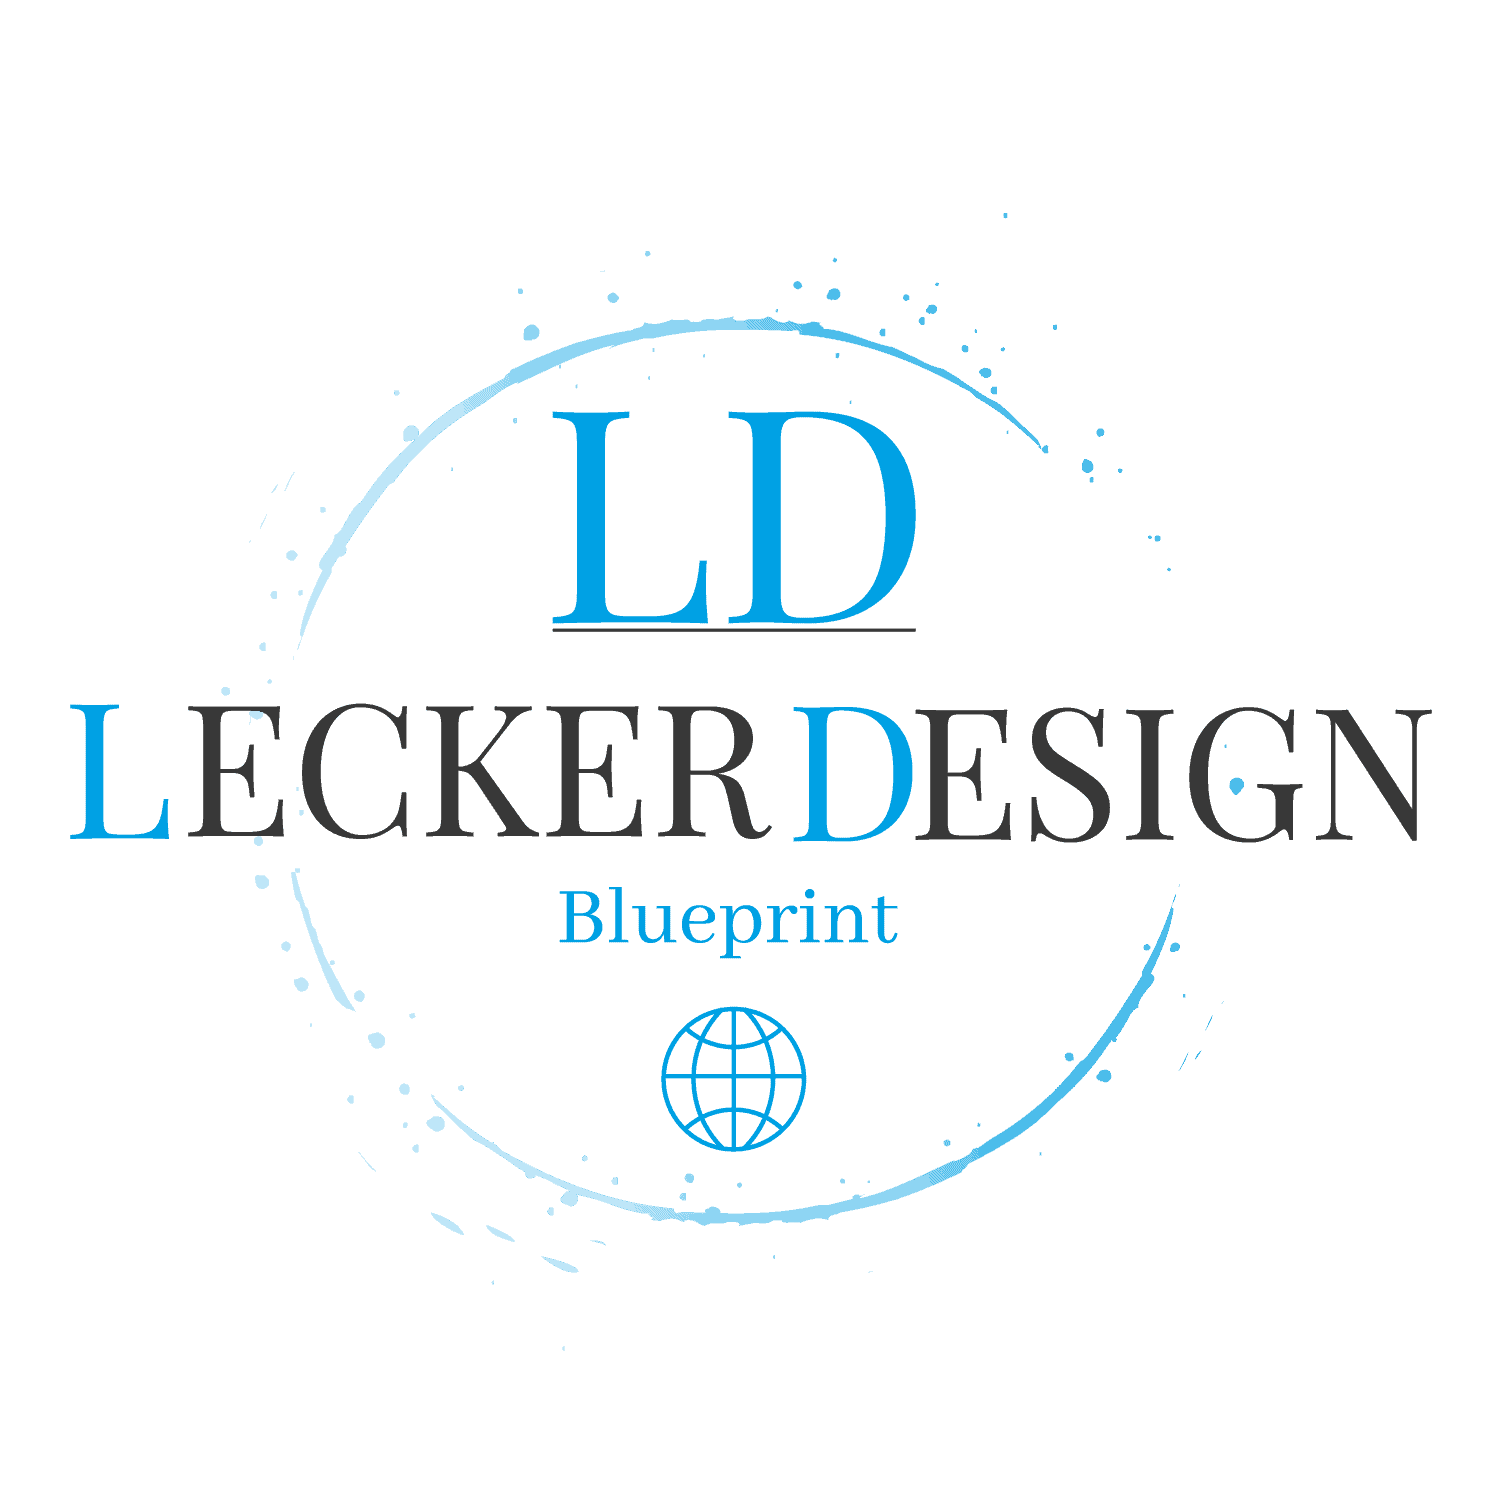 Lecker Design Blueprint